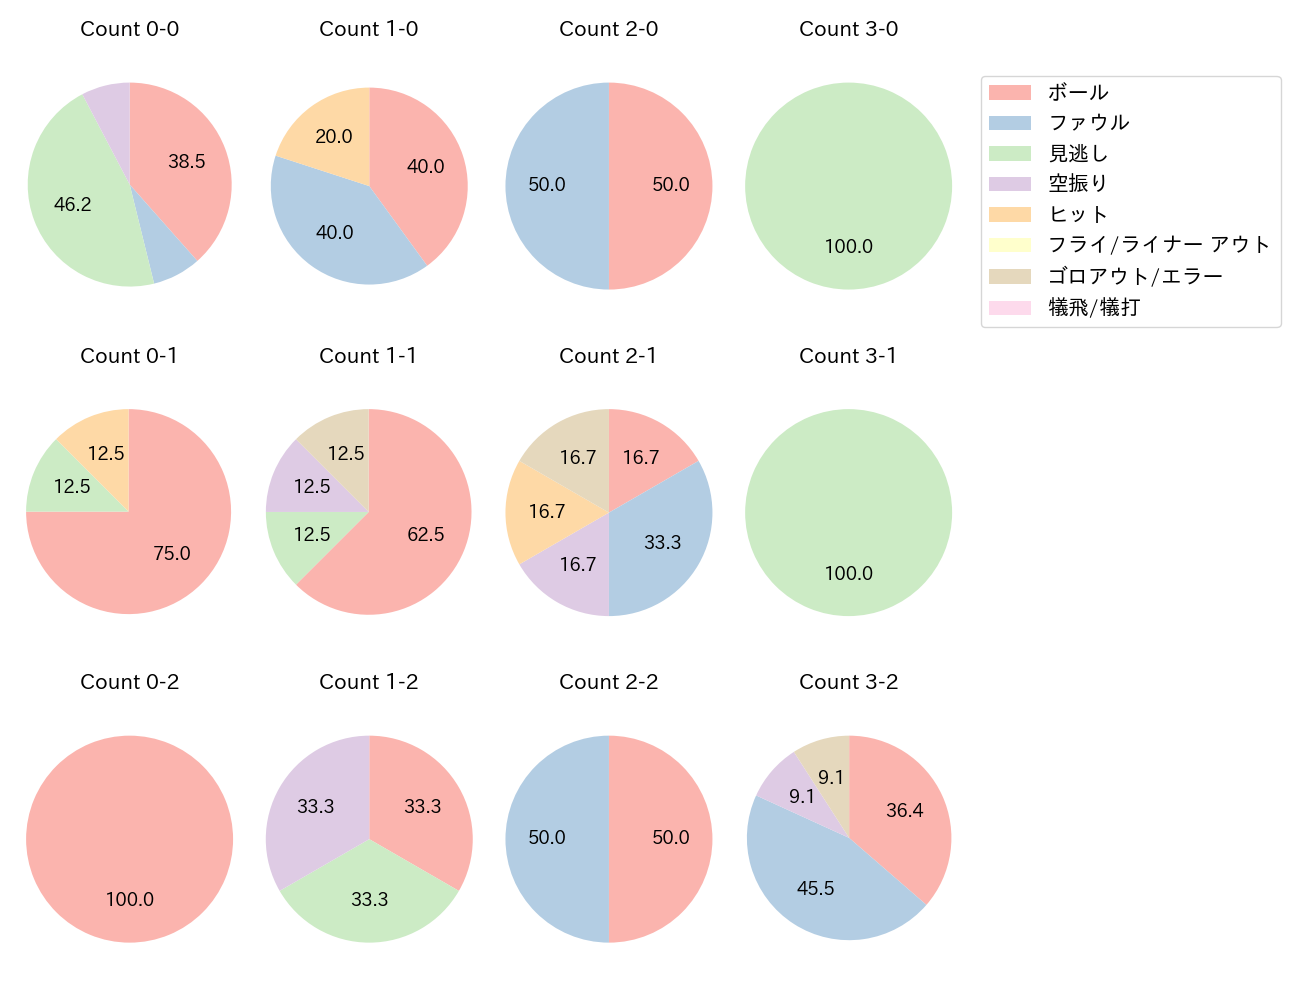 和田 康士朗の球数分布(2021年レギュラーシーズン全試合)